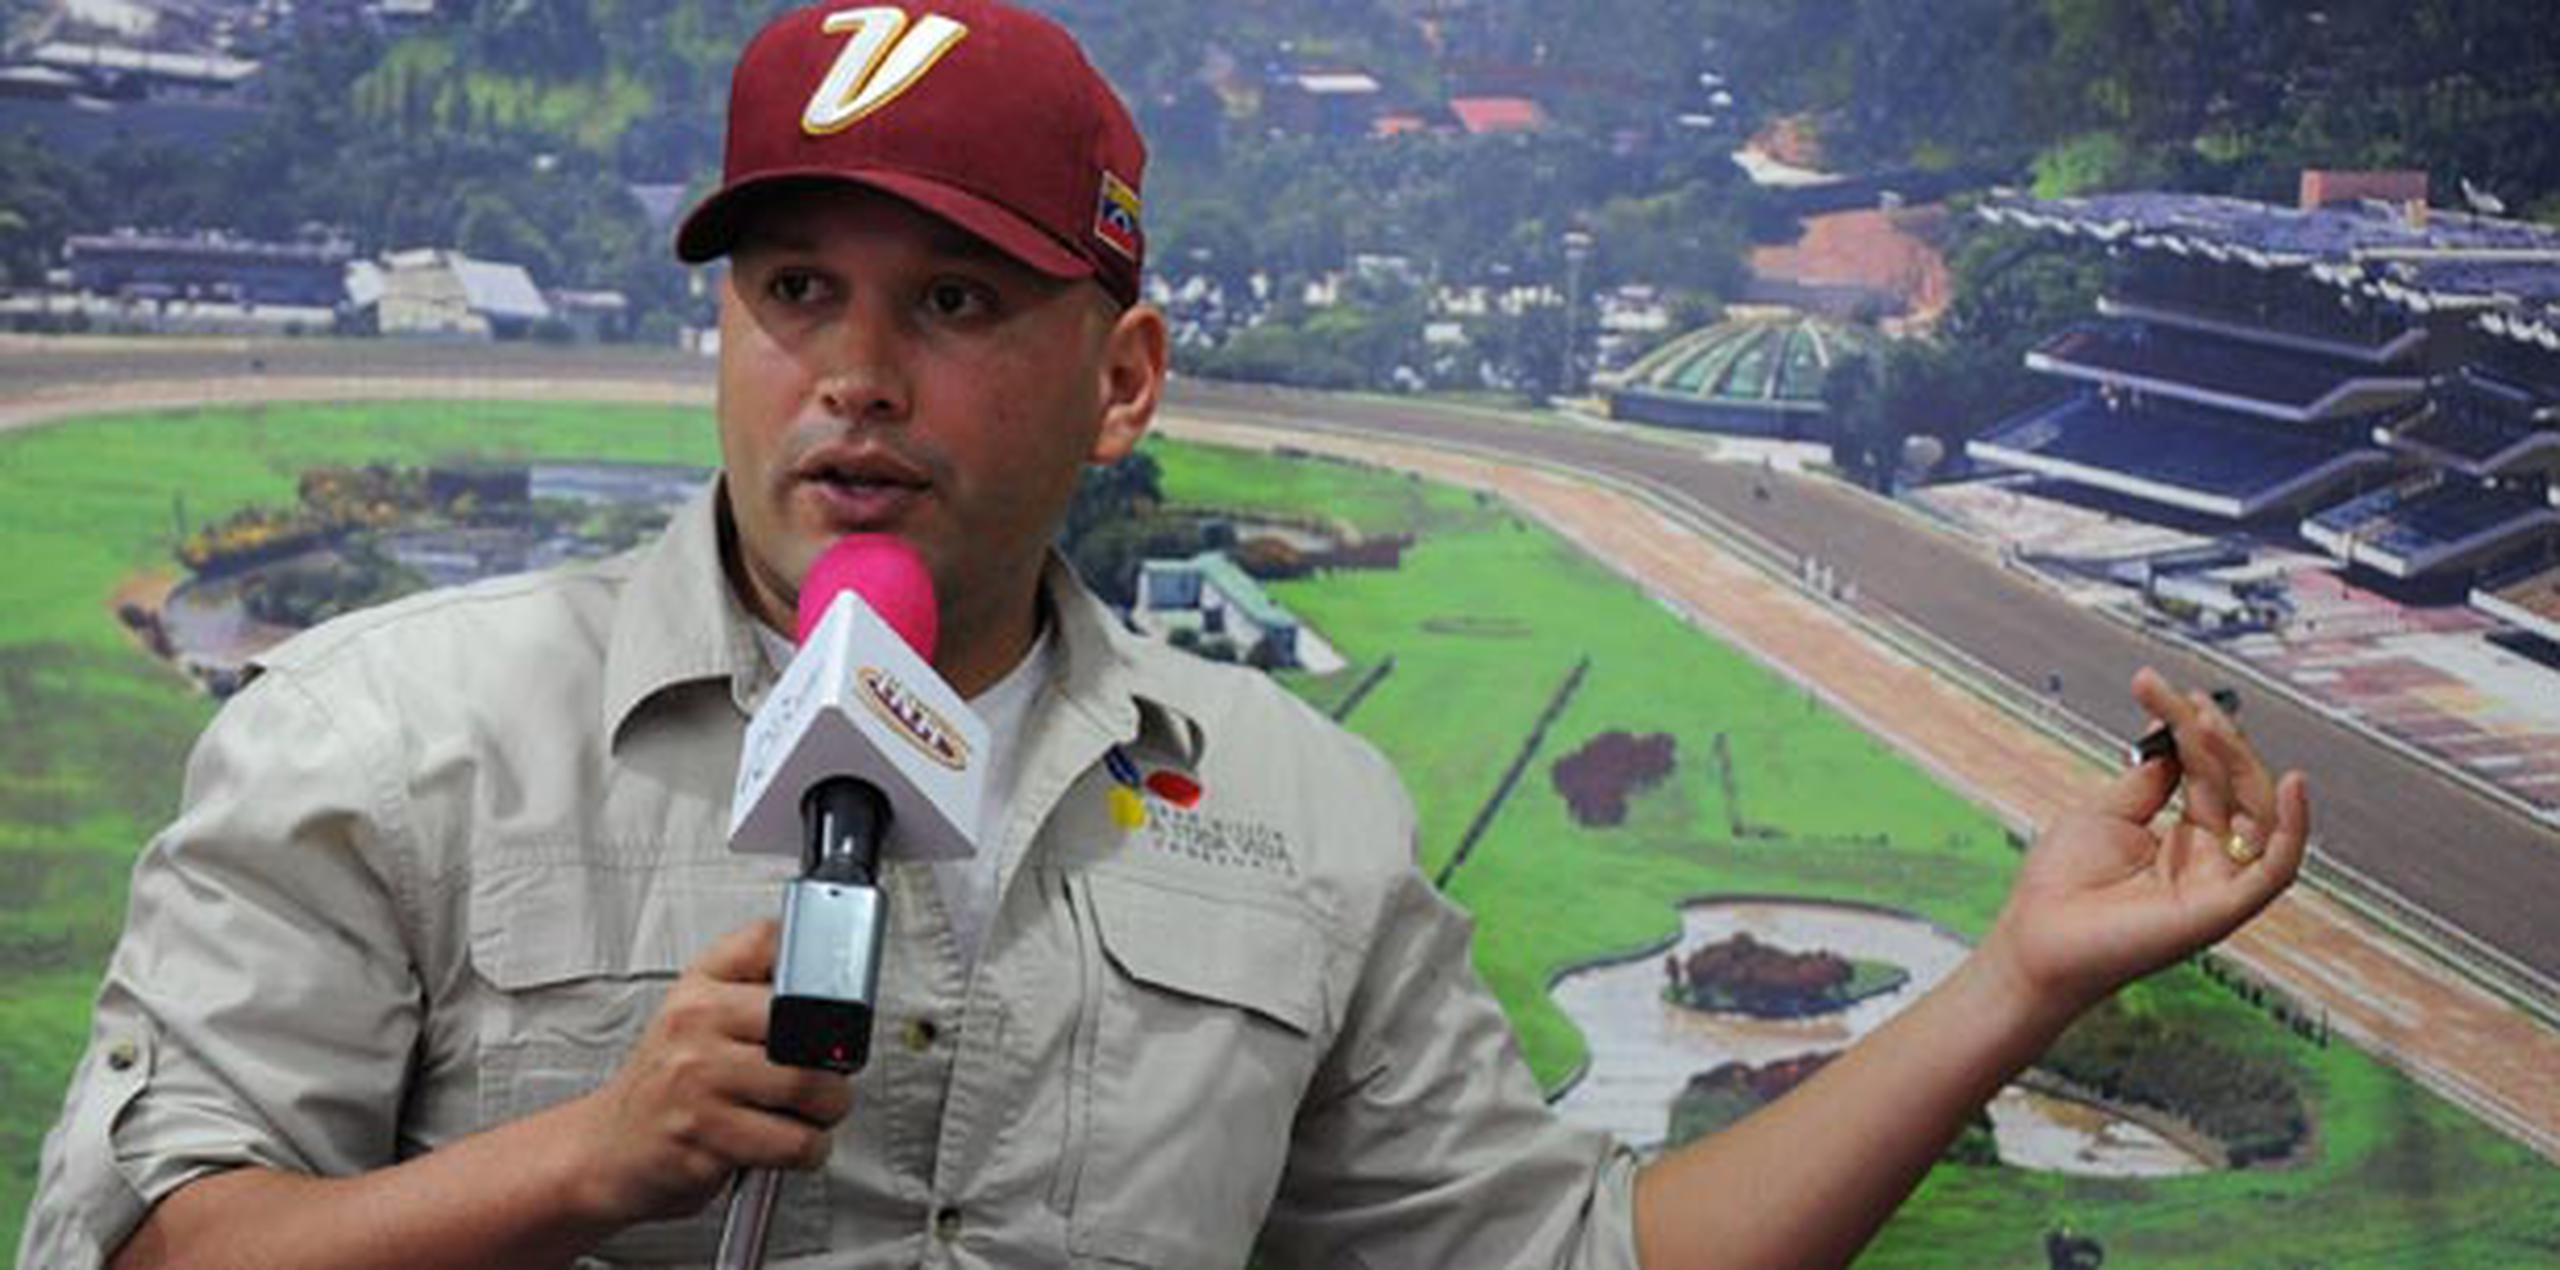 El Ministro de Juventud y Deportes de Venezuela, Antonio "El Potro" Álvarez dijo que el gobierno invirtió 40 millones de bolívares en la etapa inicial de reacondicionar el hipódromo La Rinconada para la Serie Hípica. (Suministrada)